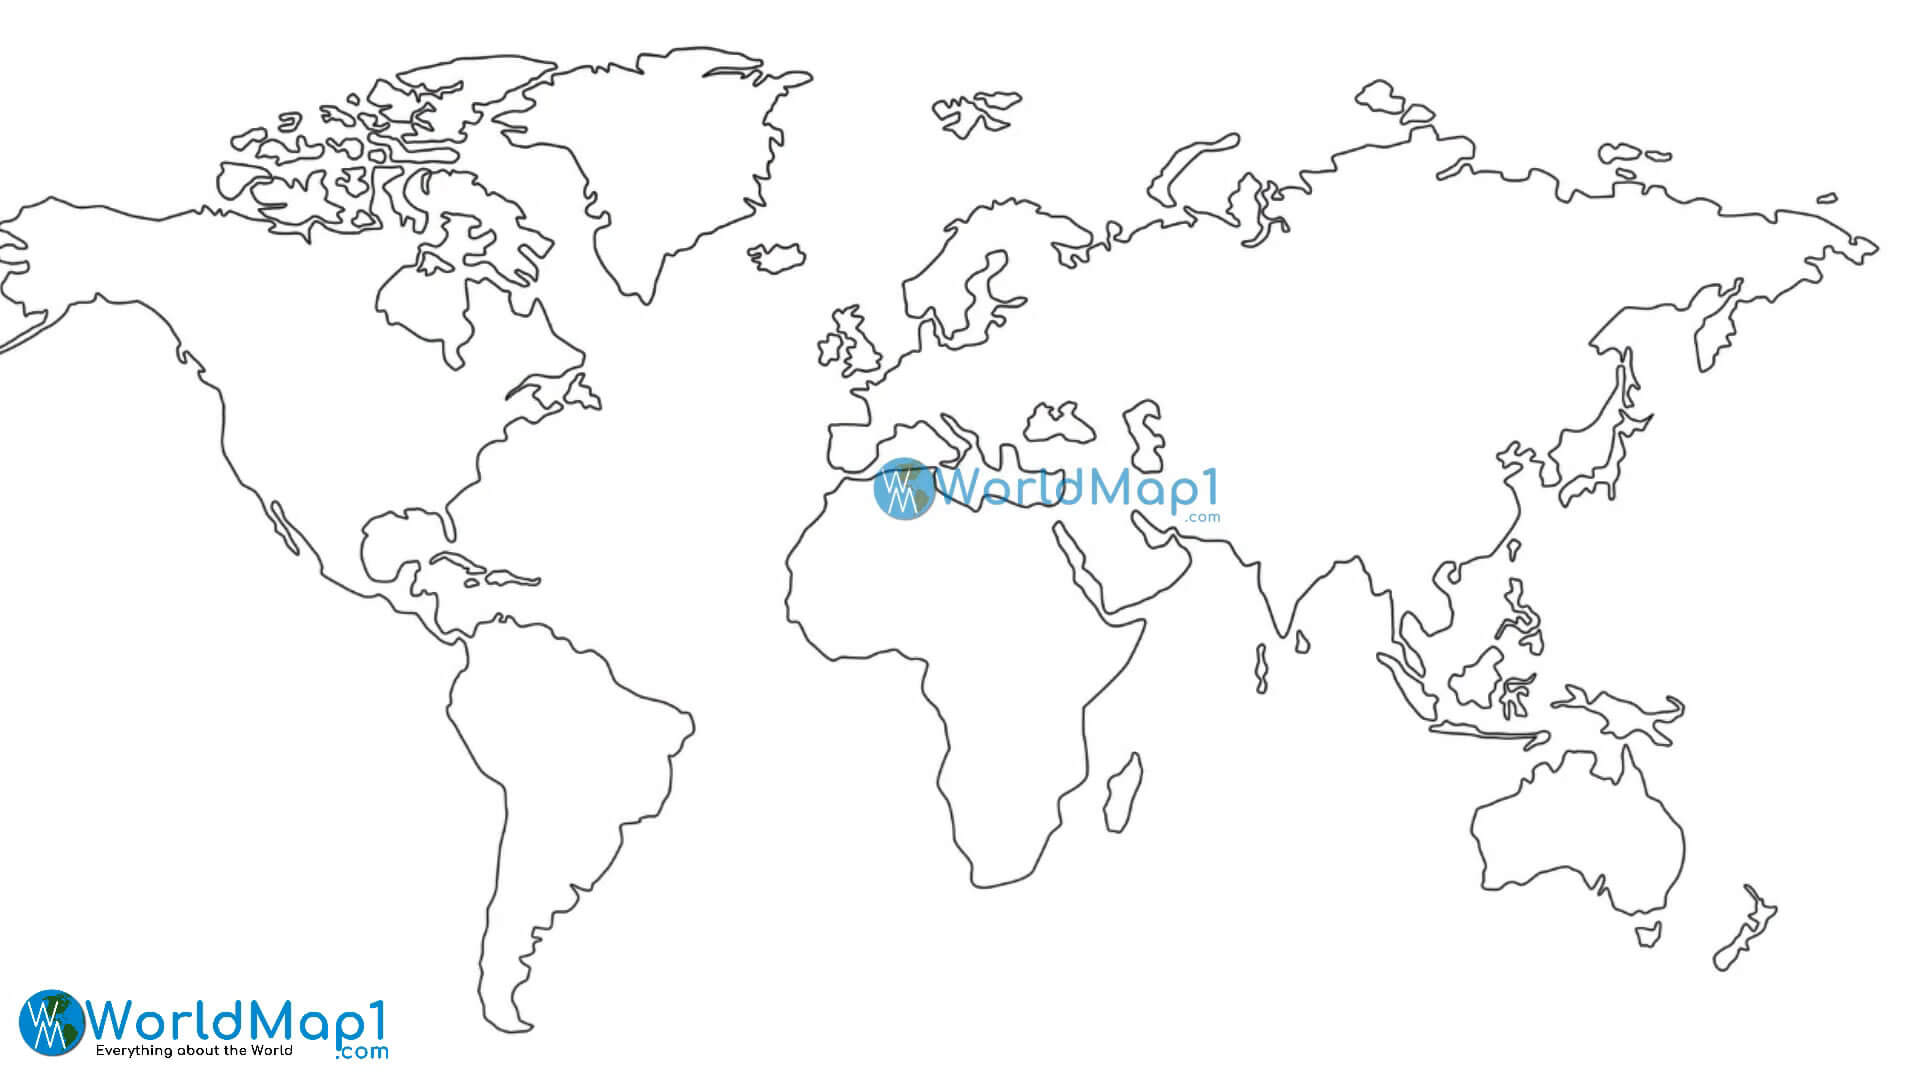 Dünya Çizgi Haritası